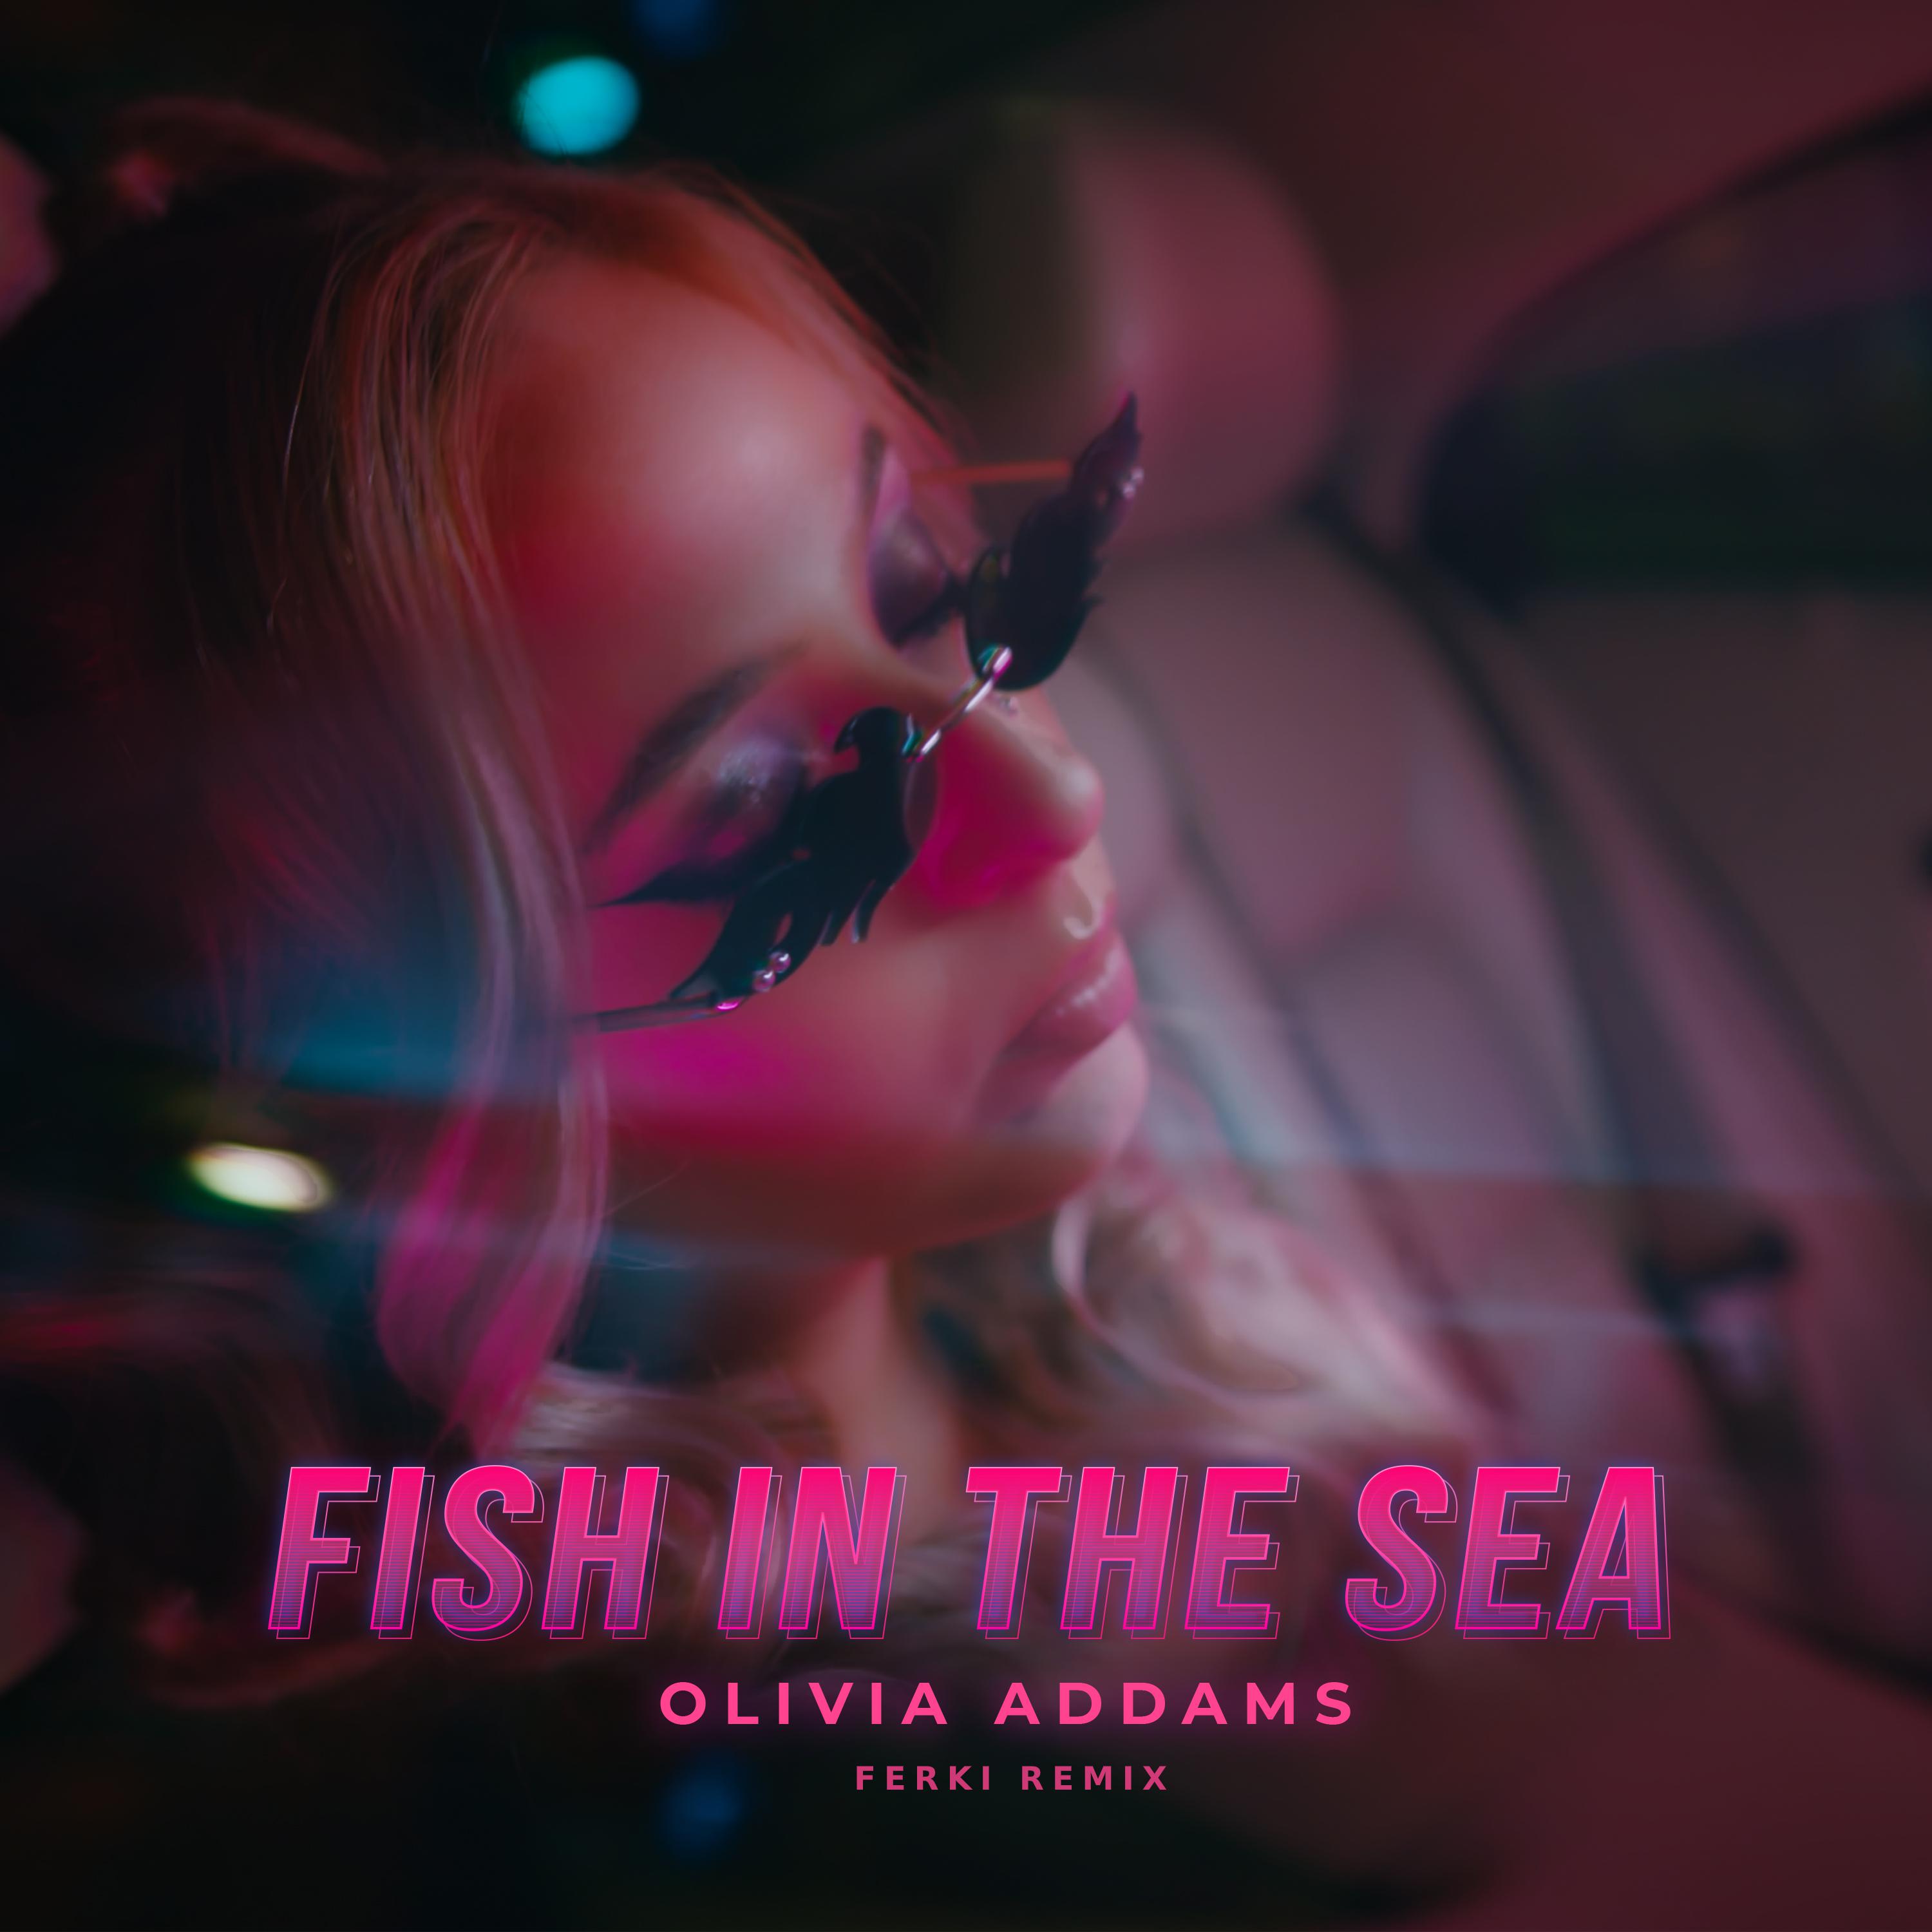 Olivia Addams - Fish in the Sea (Ferki Remix)